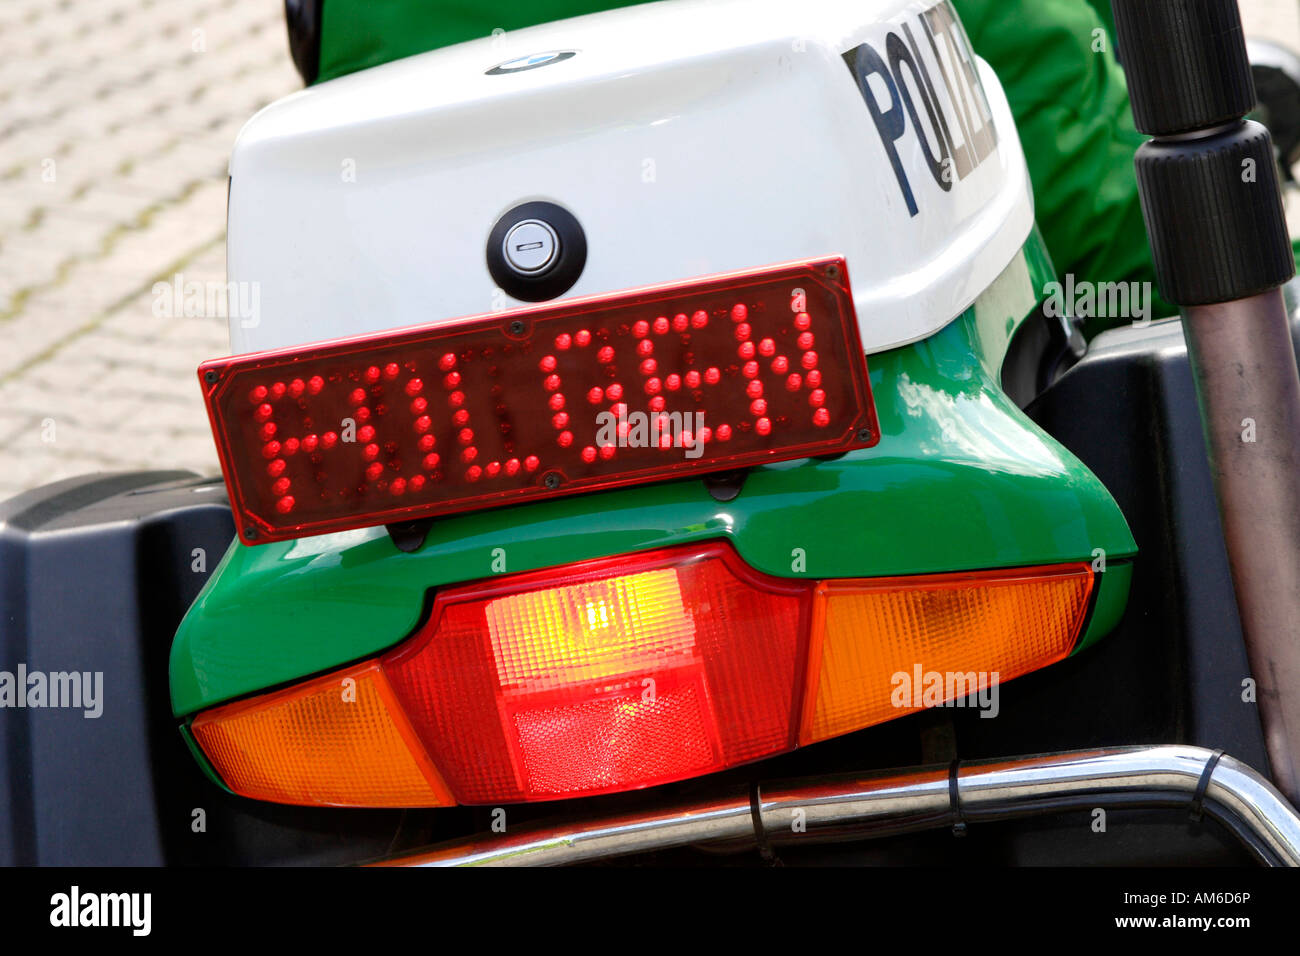 Moto de police avec 'Folgen" (Suivre) Banque D'Images